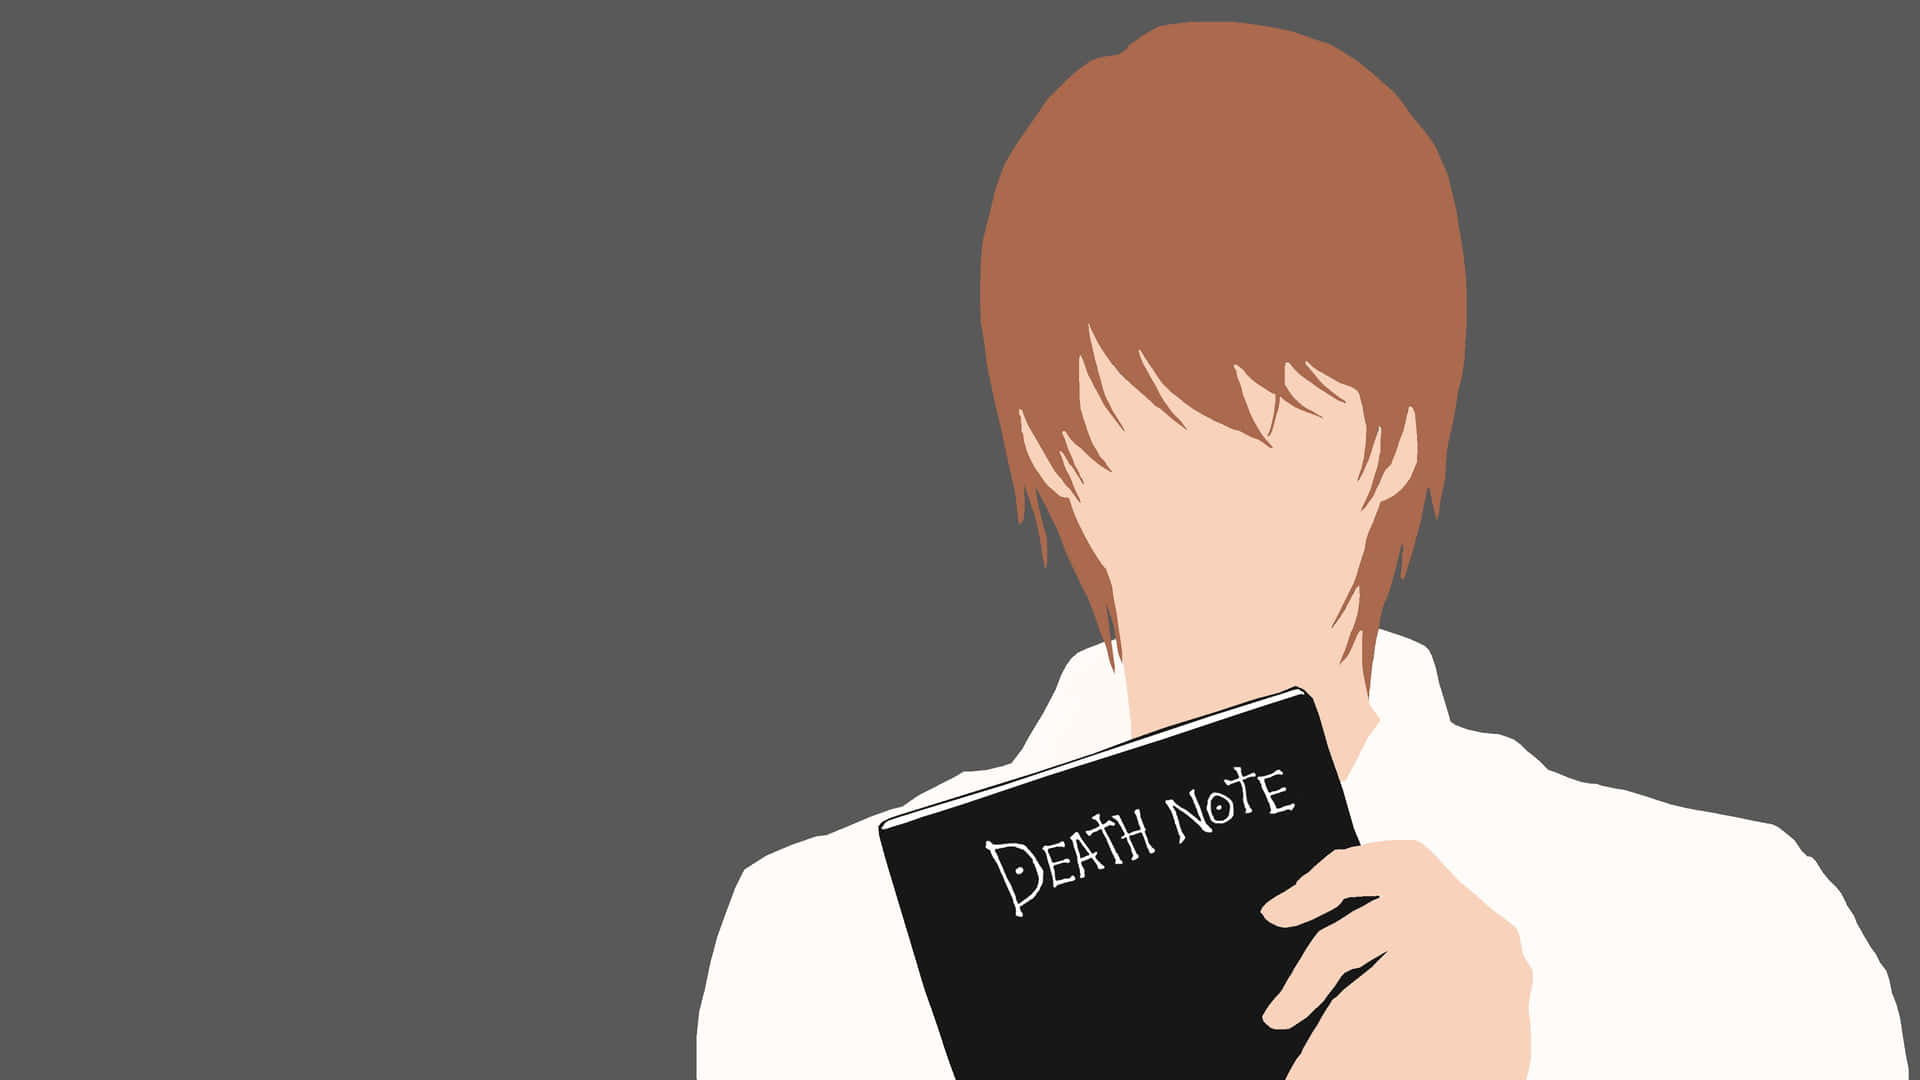 Vemkommer Att Överlista Den Stora Light Yagami I Death Note 4k På Datorskärmen Eller Mobilbakgrunden? Wallpaper